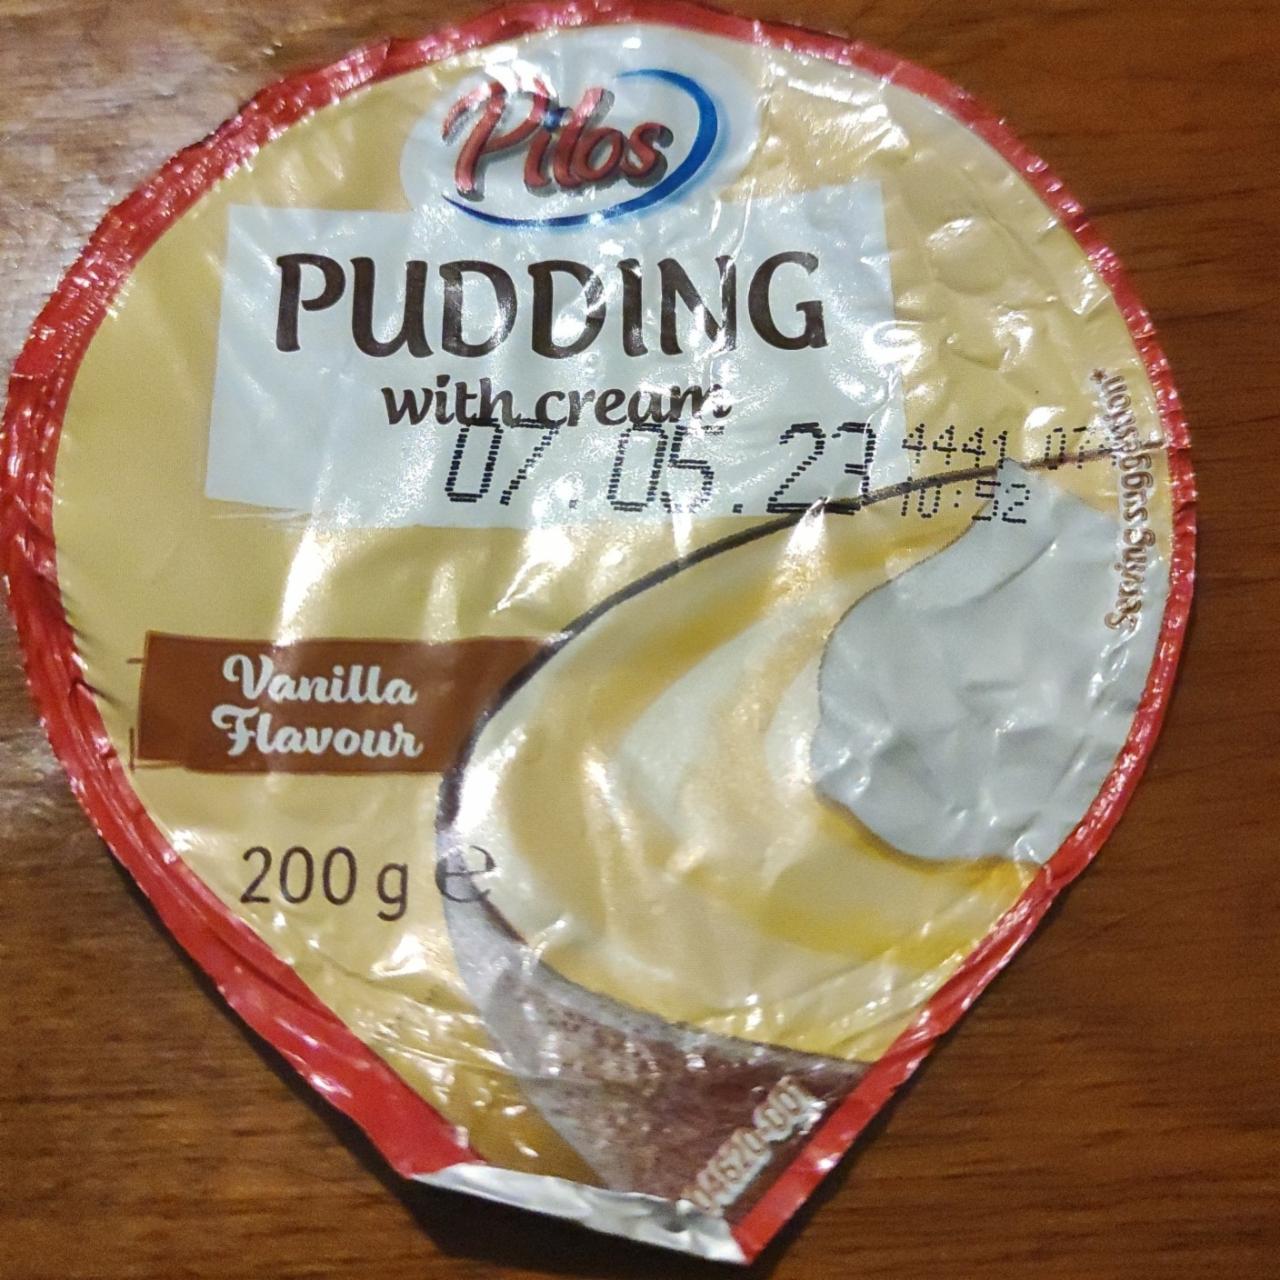 Fotografie - Pudding with cream Vanilla Pilos